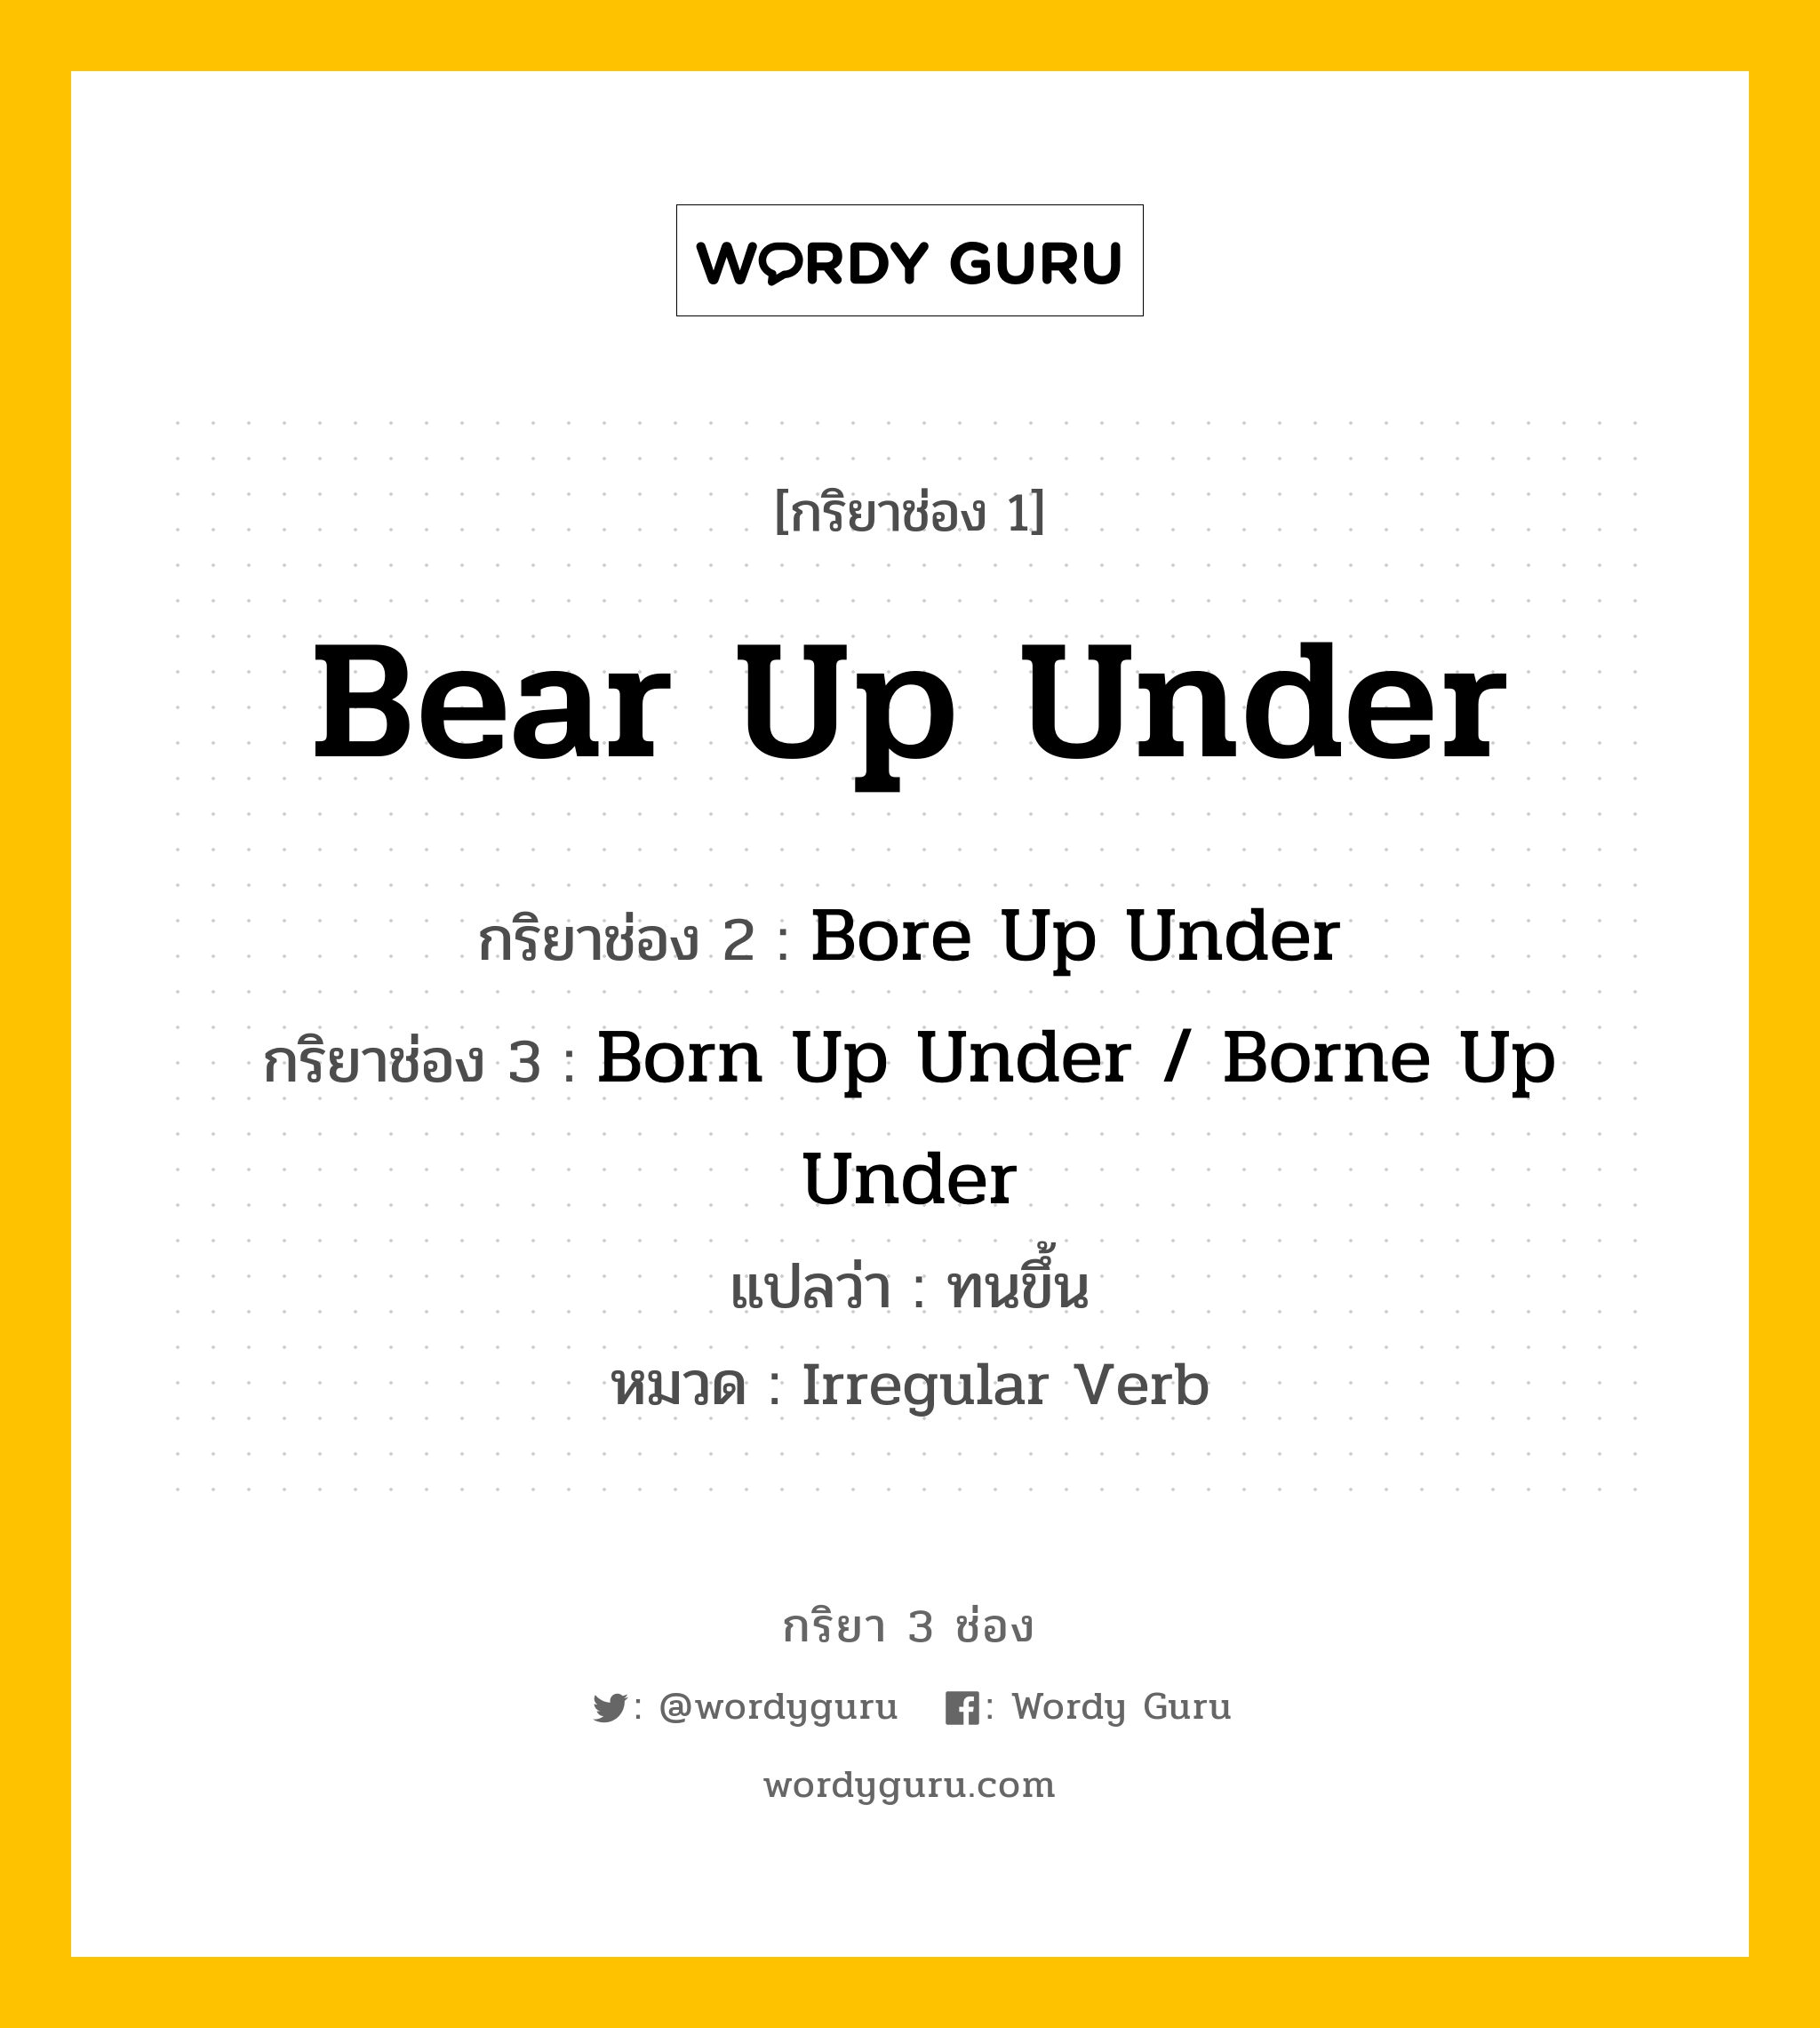 Bear Up Under มีกริยา 3 ช่องอะไรบ้าง? คำศัพท์ในกลุ่มประเภท Irregular Verb, กริยาช่อง 1 Bear Up Under กริยาช่อง 2 Bore Up Under กริยาช่อง 3 Born Up Under / Borne Up Under แปลว่า ทนขึ้น หมวด Irregular Verb หมวด Irregular Verb